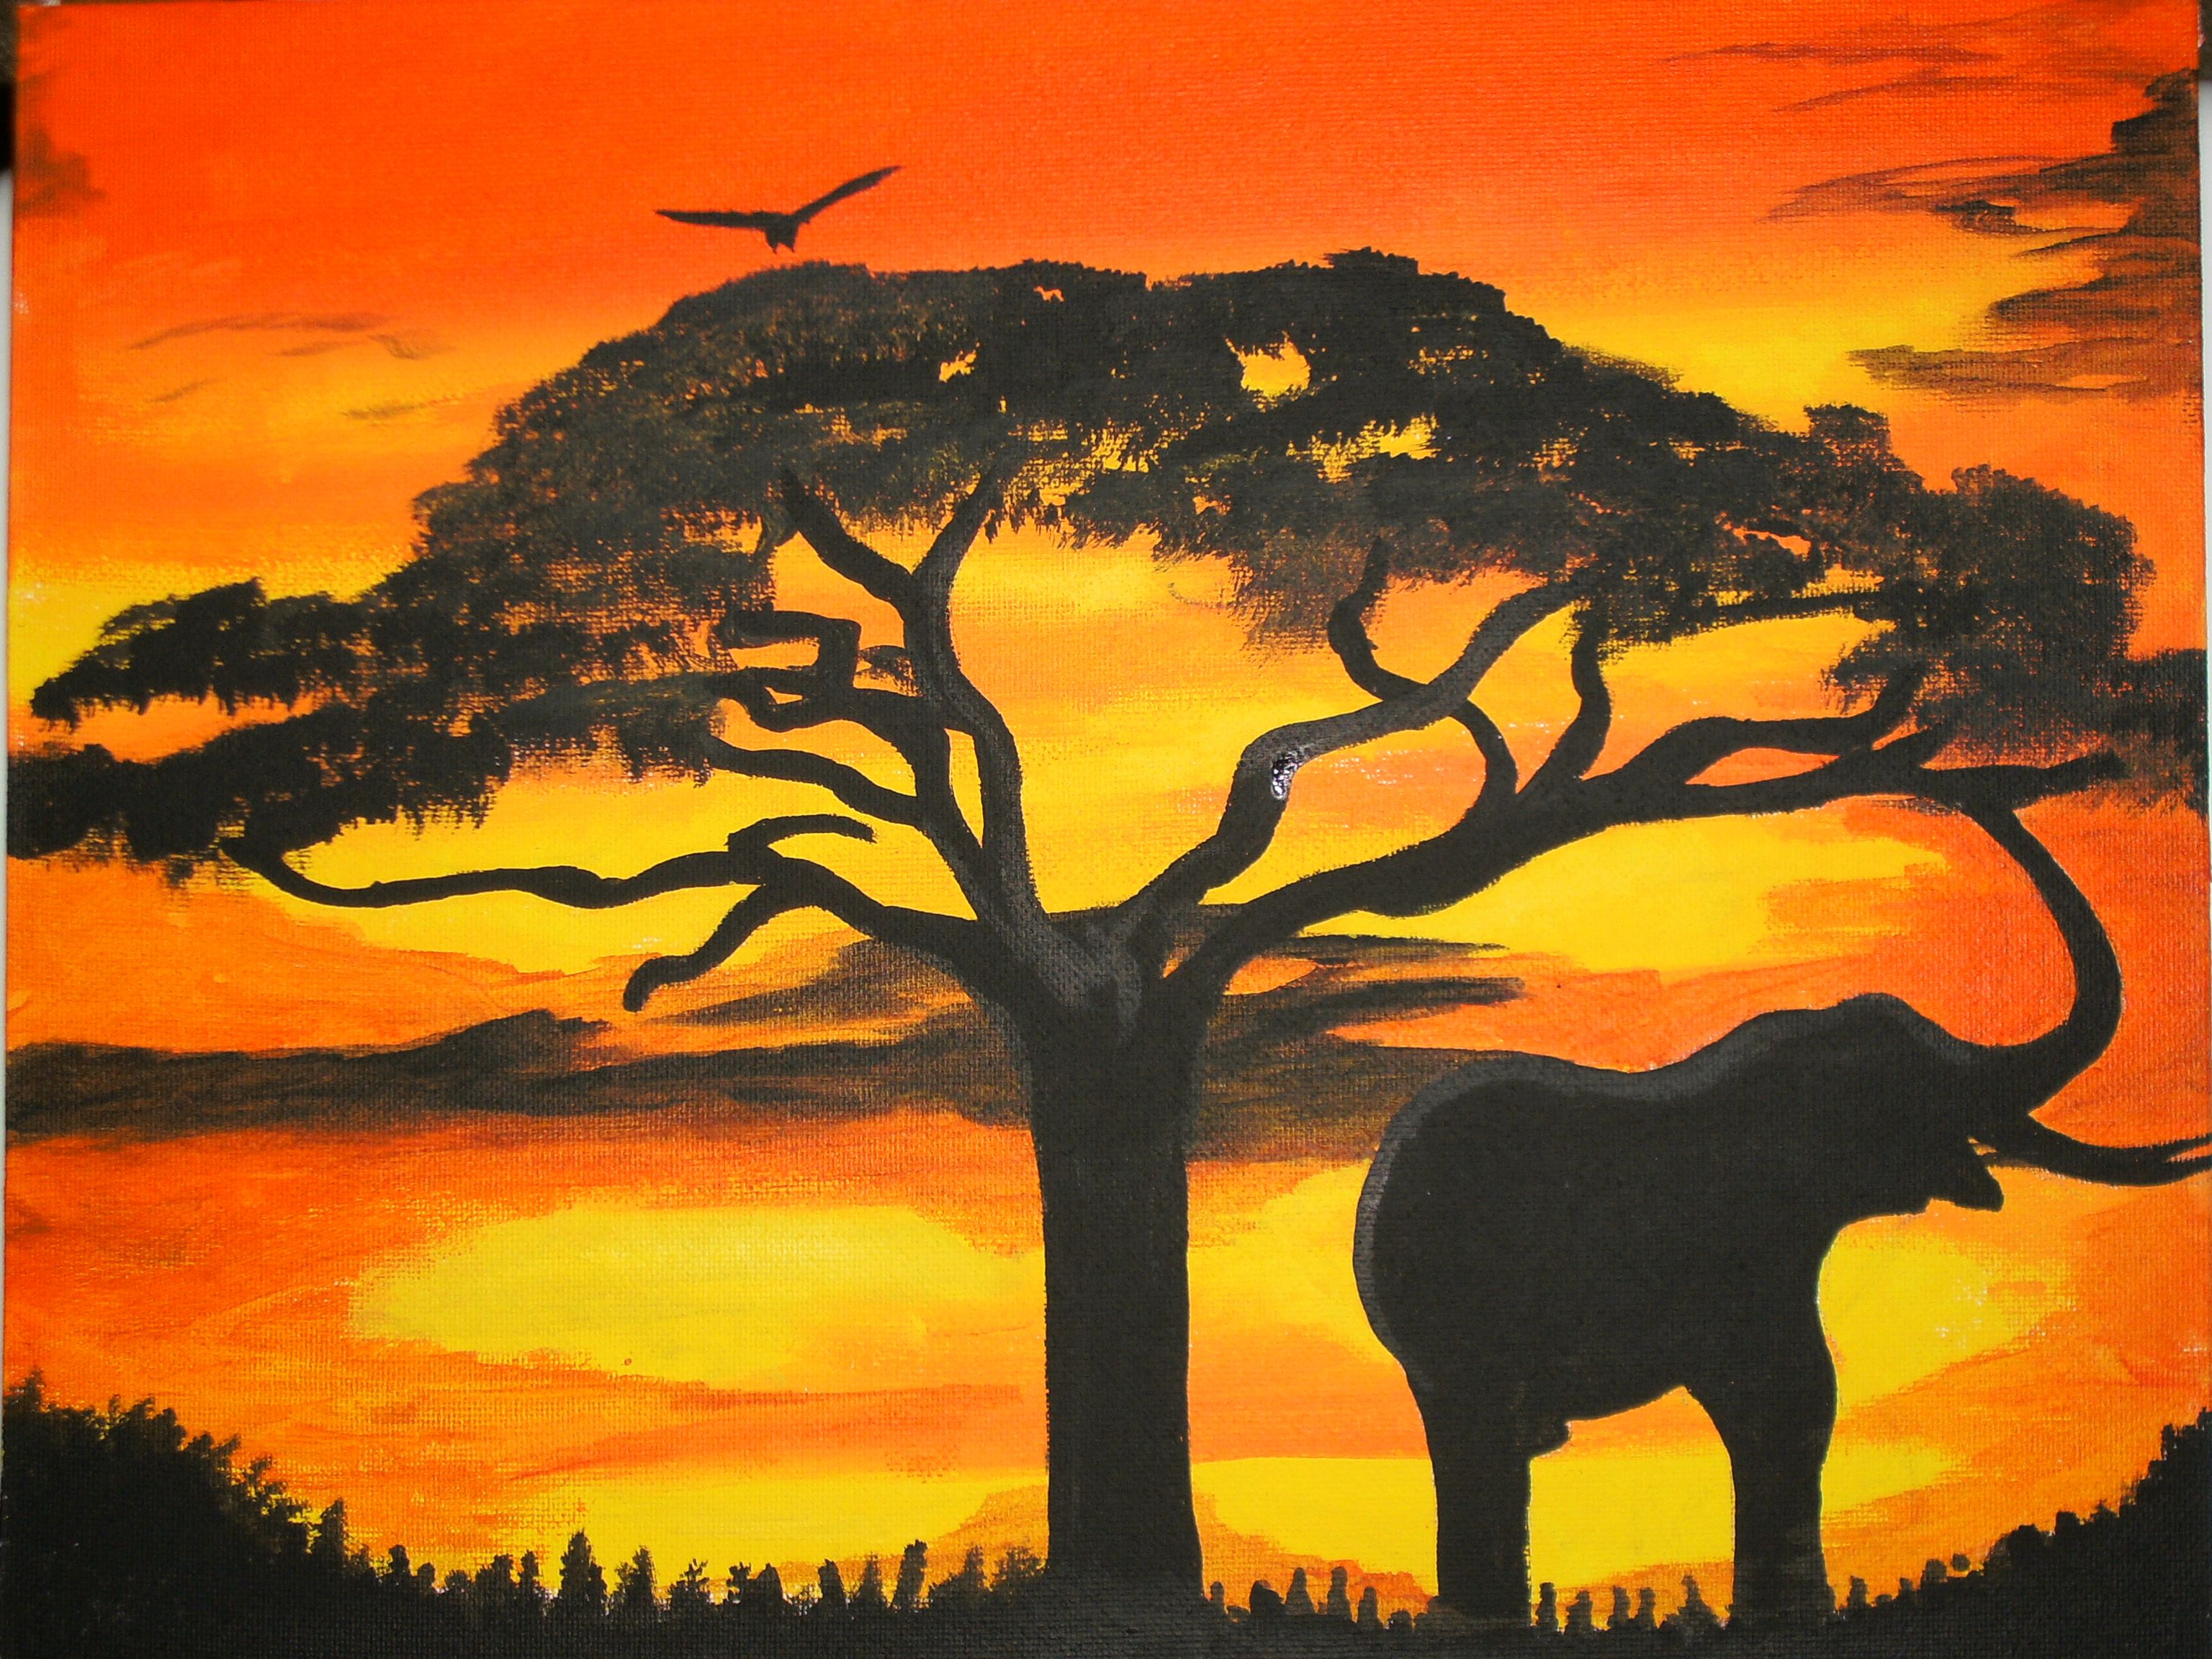 아프리카 테마 벽지,코끼리,야생 동물,코끼리와 매머드,자연 경관,아프리카 코끼리